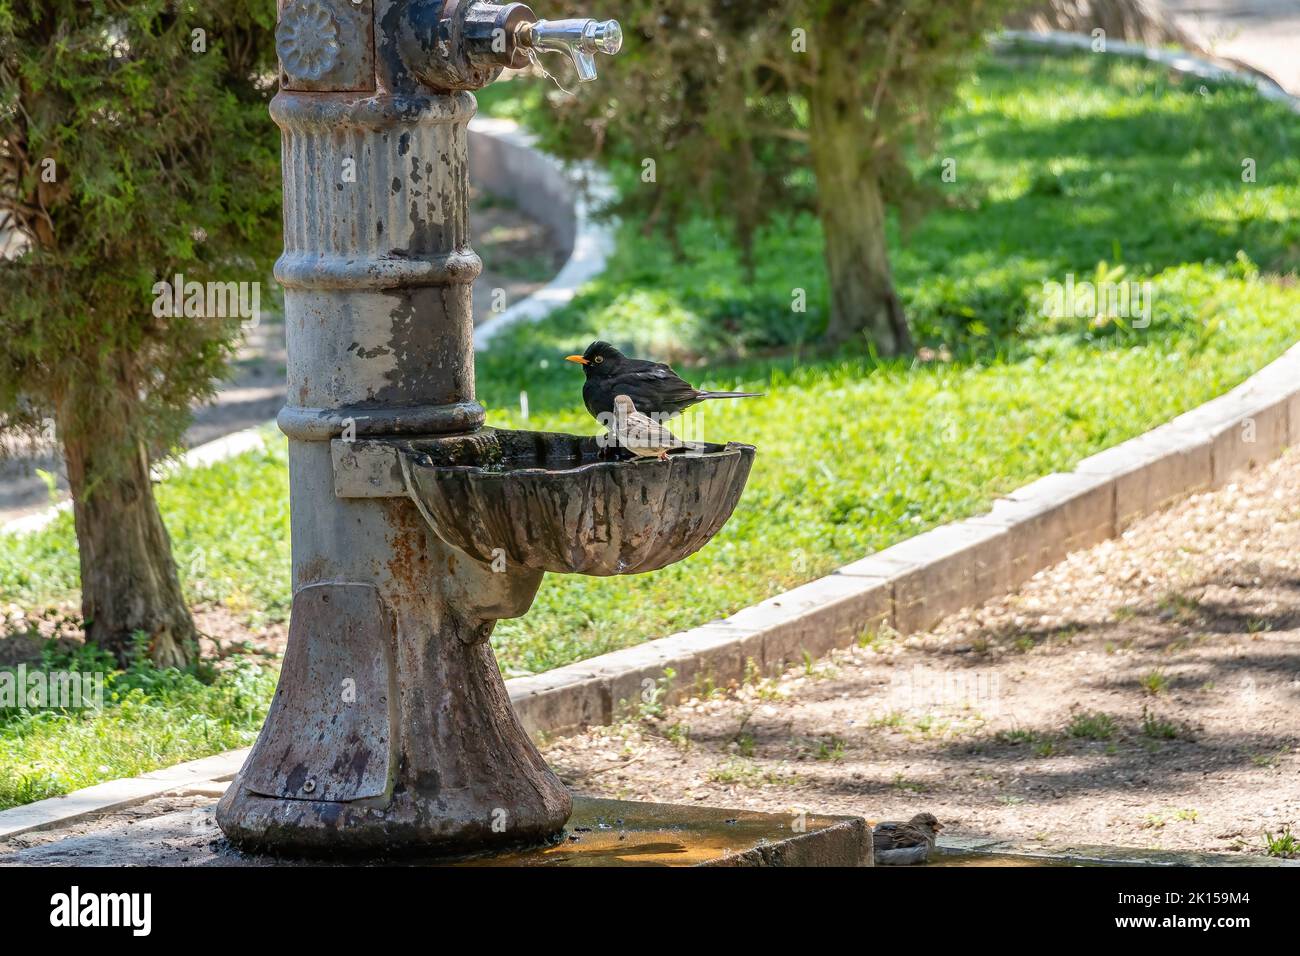 El ave negra macho (Turdus merula) se baña y bebe en una fuente pública Foto de stock